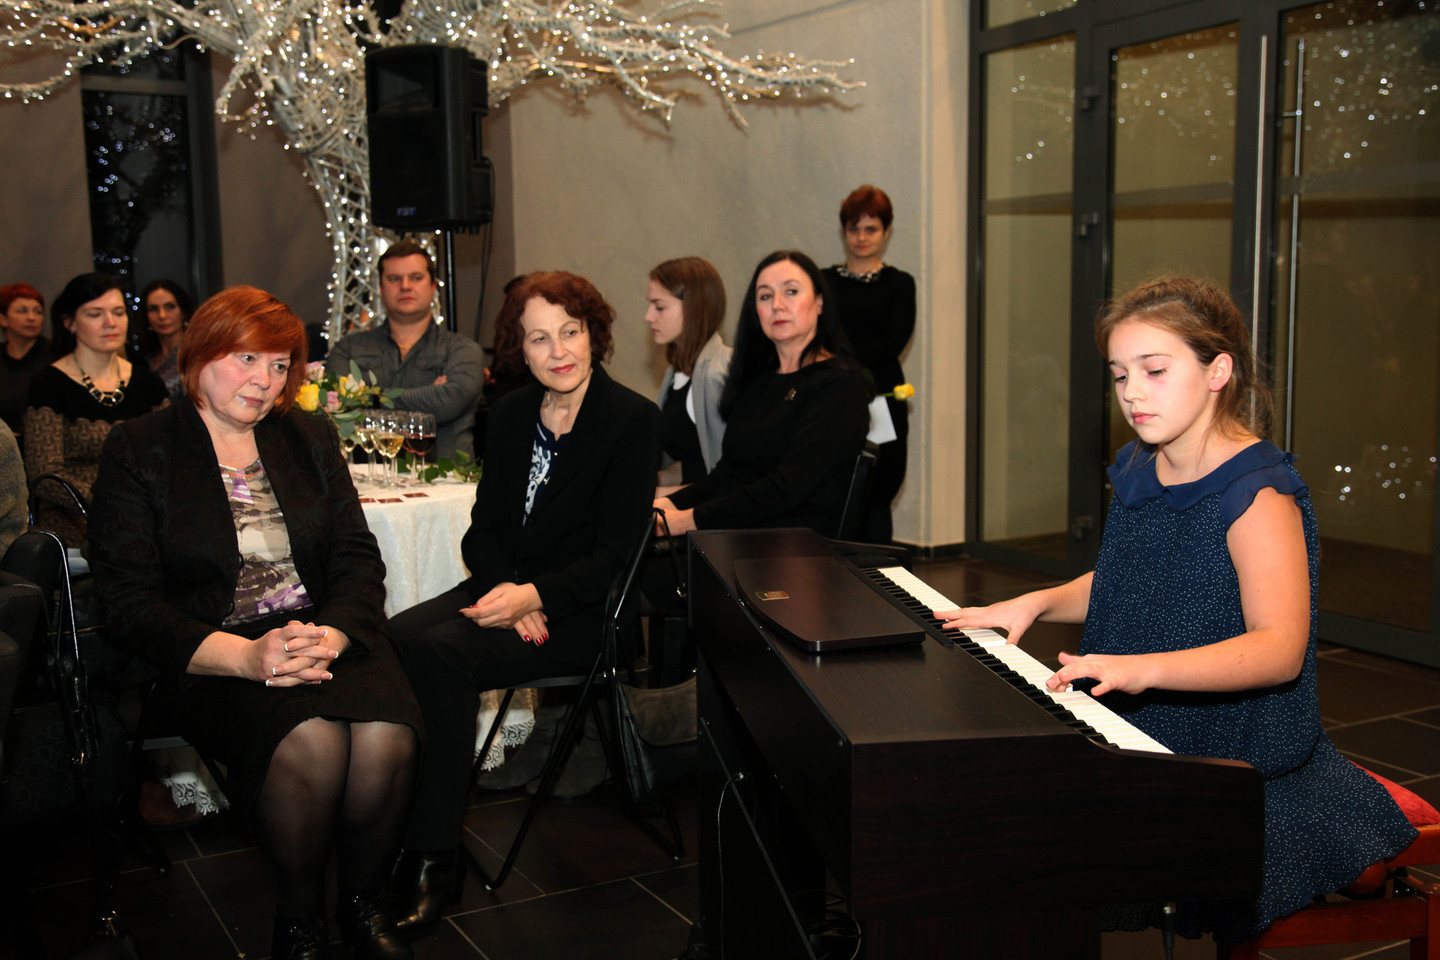 Marijampolėje klubas „Zonta“ surengė labdaros vakarą, kurio metu surinktos lėšos buvo skirtos muzikos besimokančioms talentingoms moksleivėms. Vakaro dalyviams G.Maliauskaitė atliko muzikos kūrinį.<br>R.Brazytės nuotr.